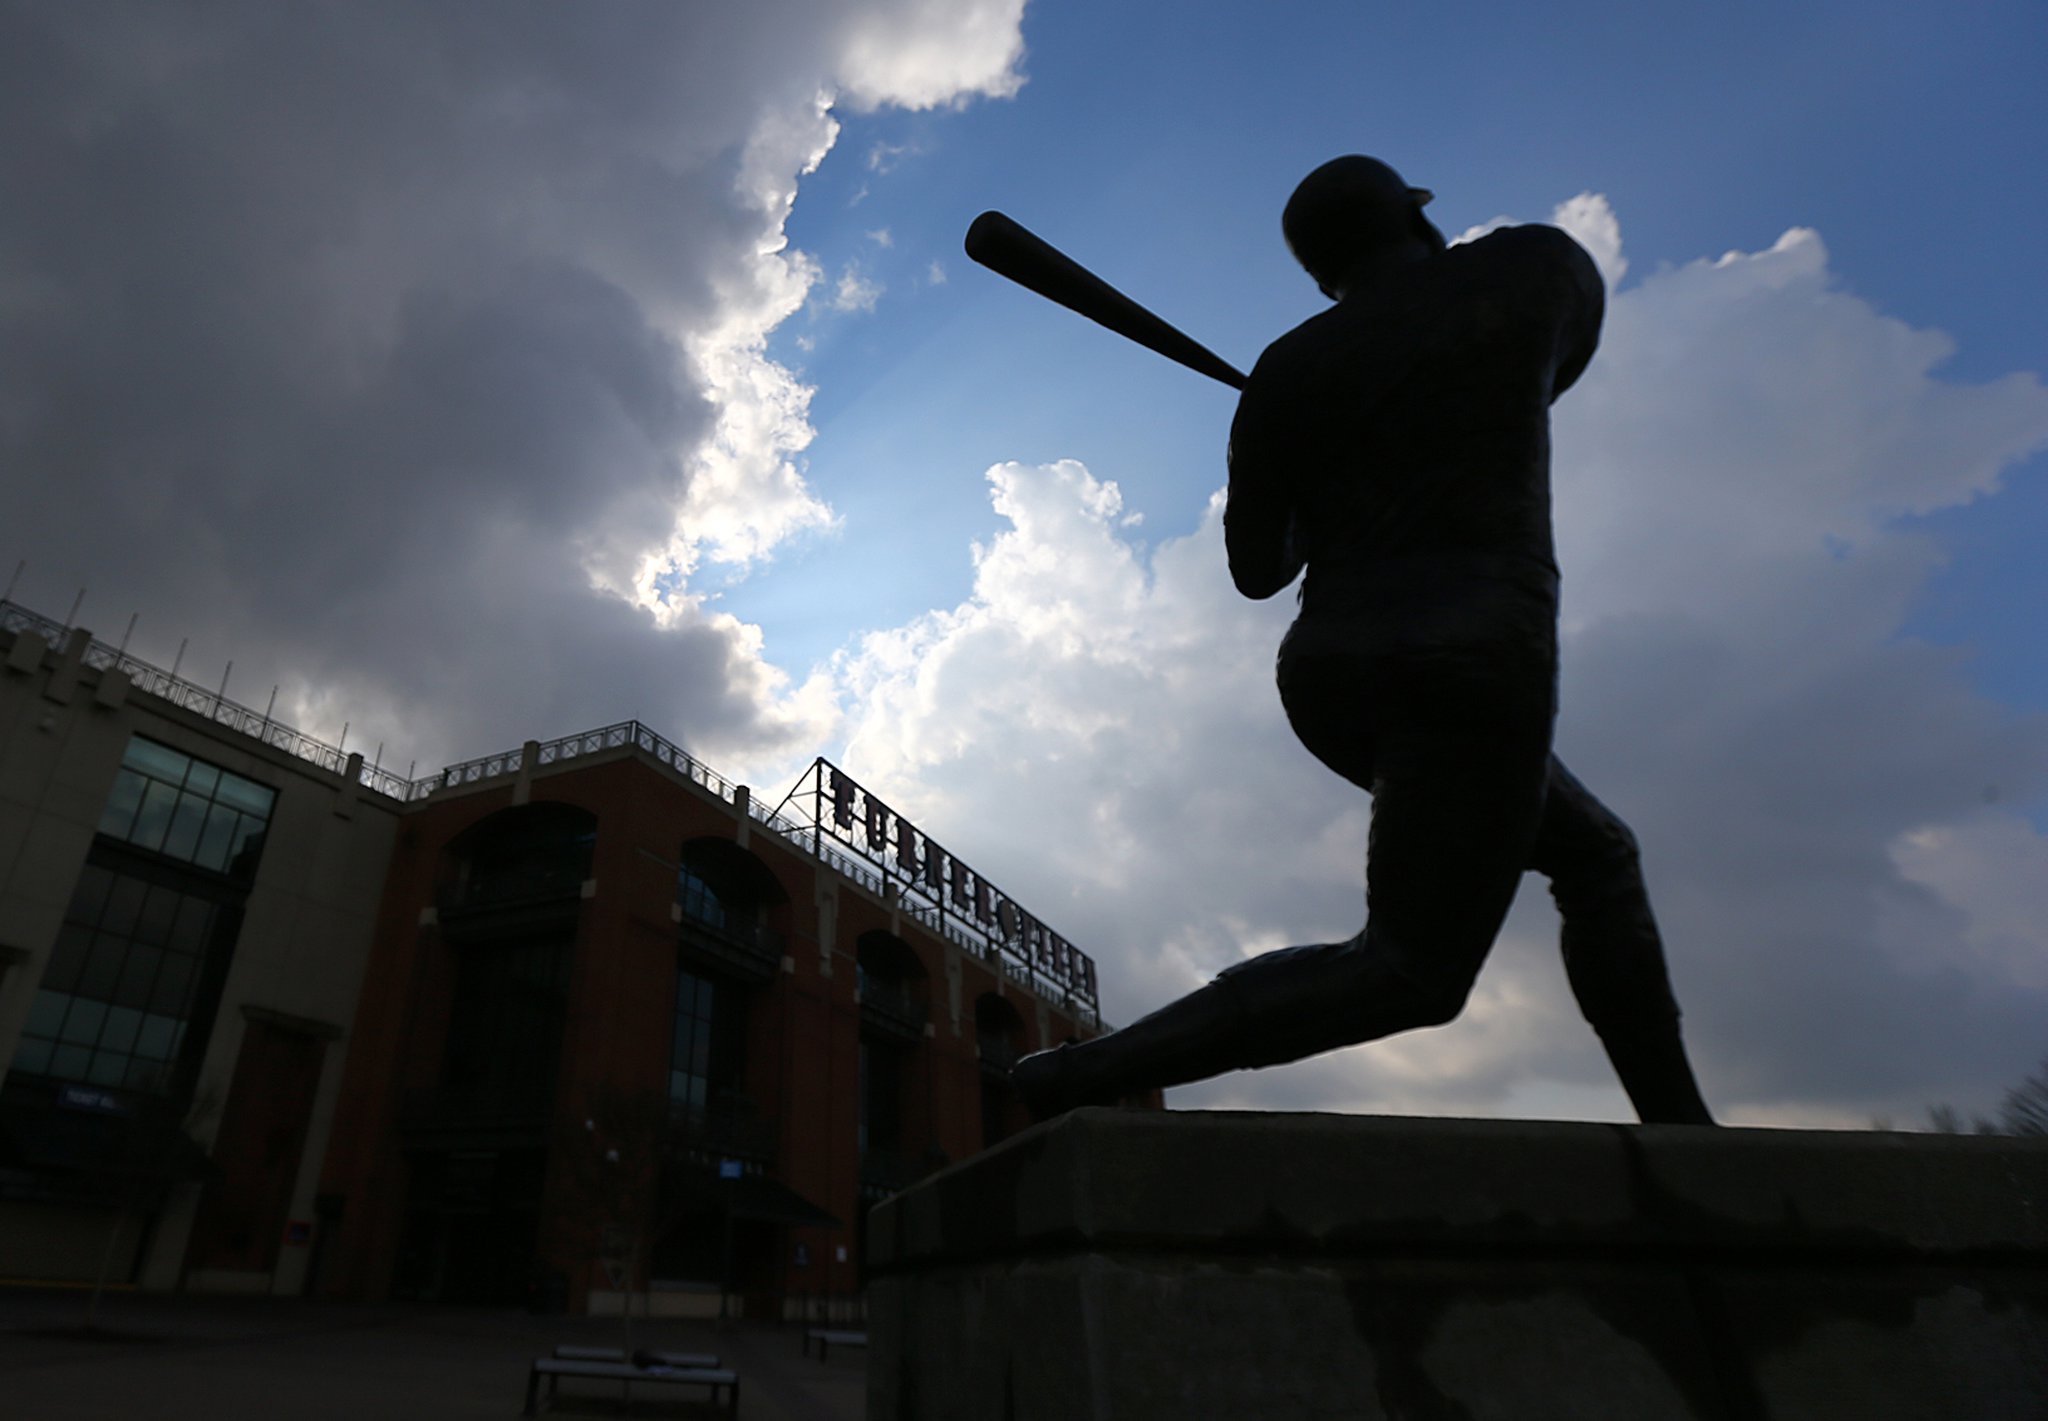 Turner Field's Hank Aaron statue won't follow Braves to new ballpark